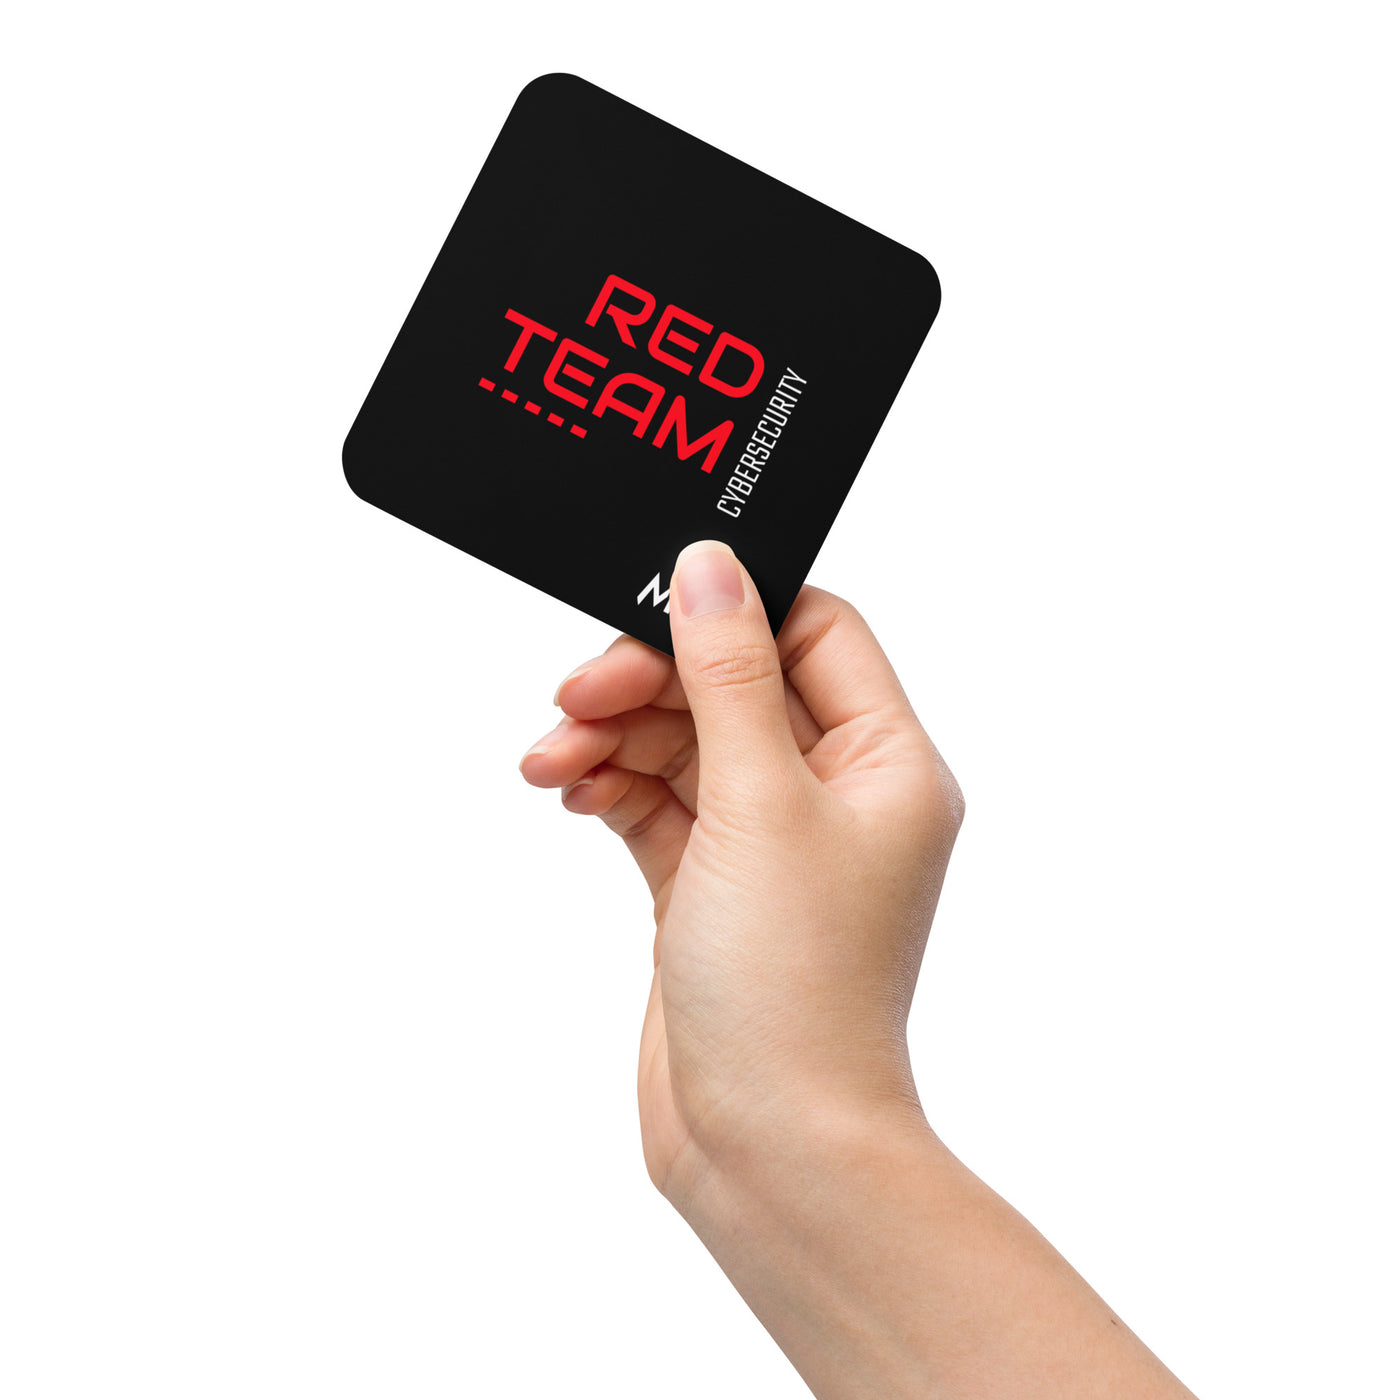 Cyber Security Red Team V14 - Cork-back coaster